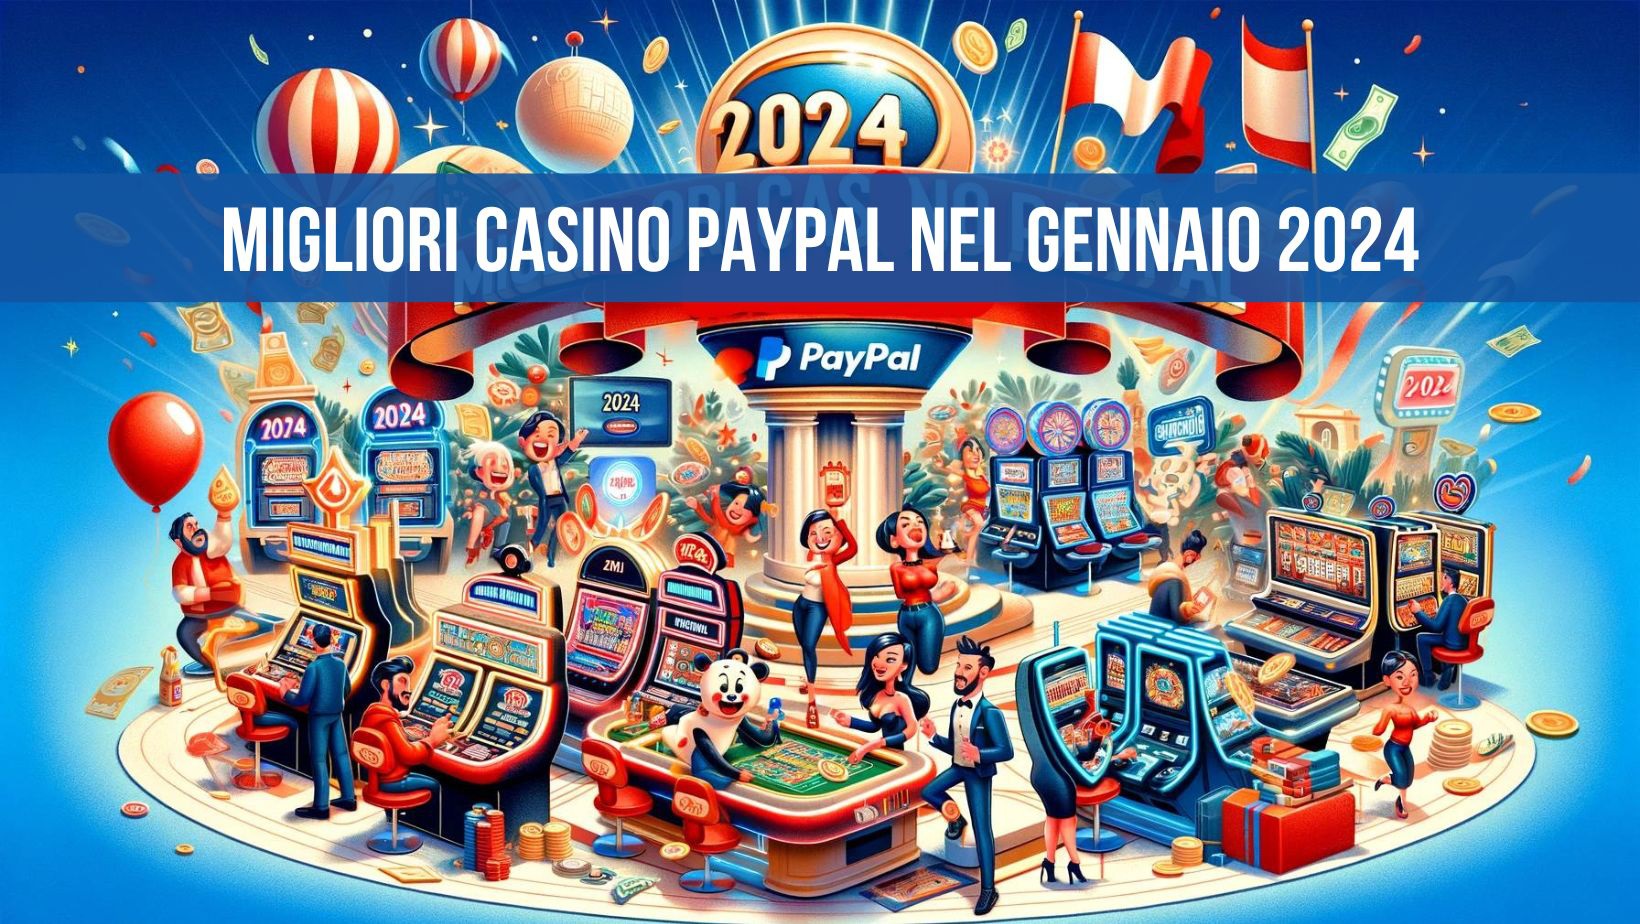 Migliori Casino PayPal nel Gennaio 2024